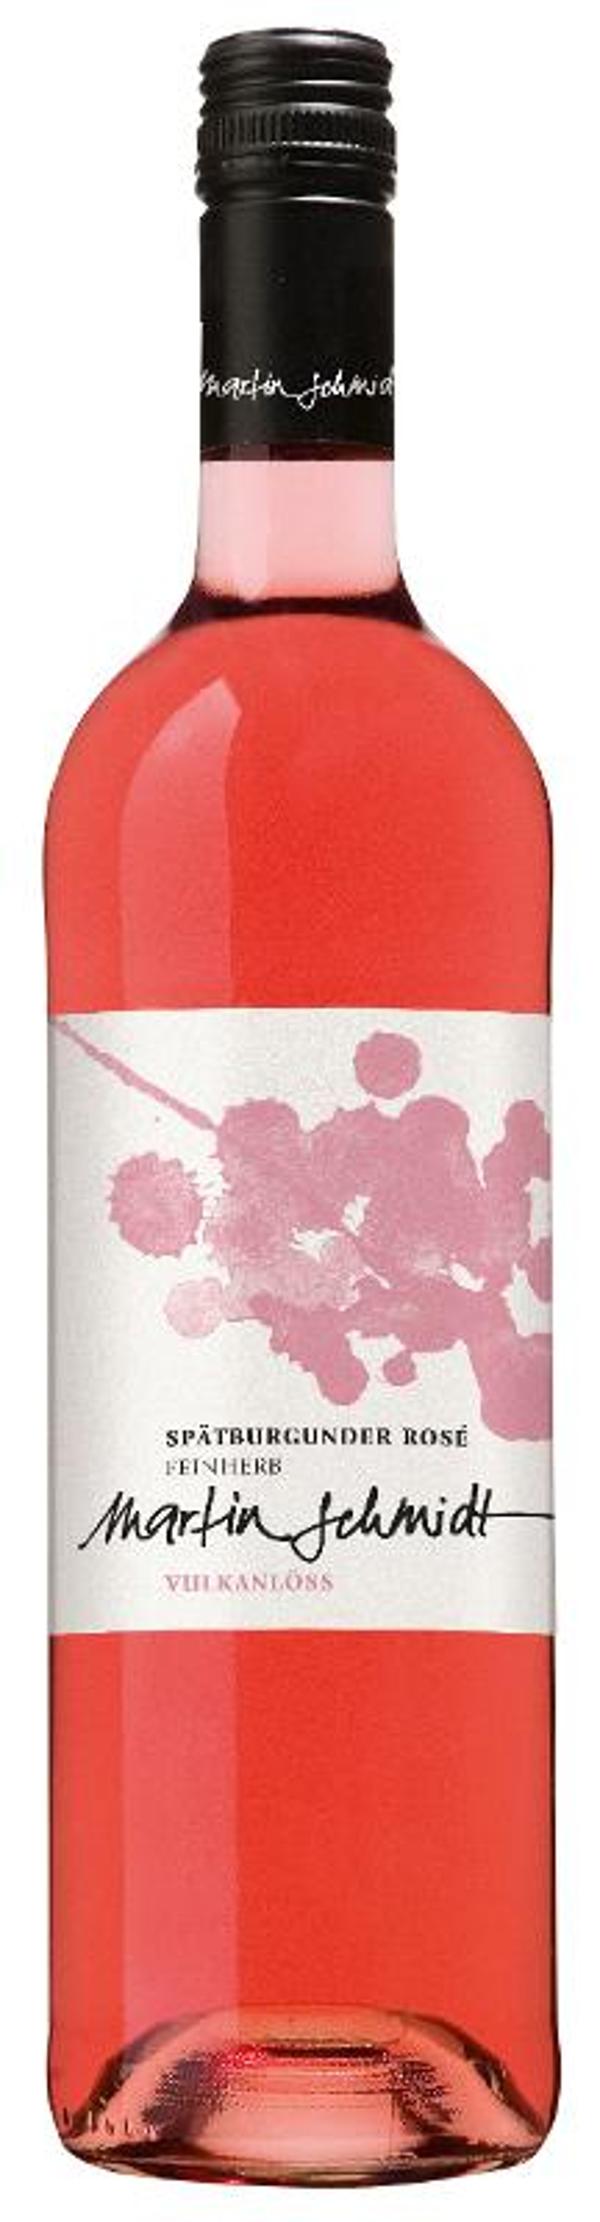 Produktfoto zu Vulkanlöss rosé , 0,75l